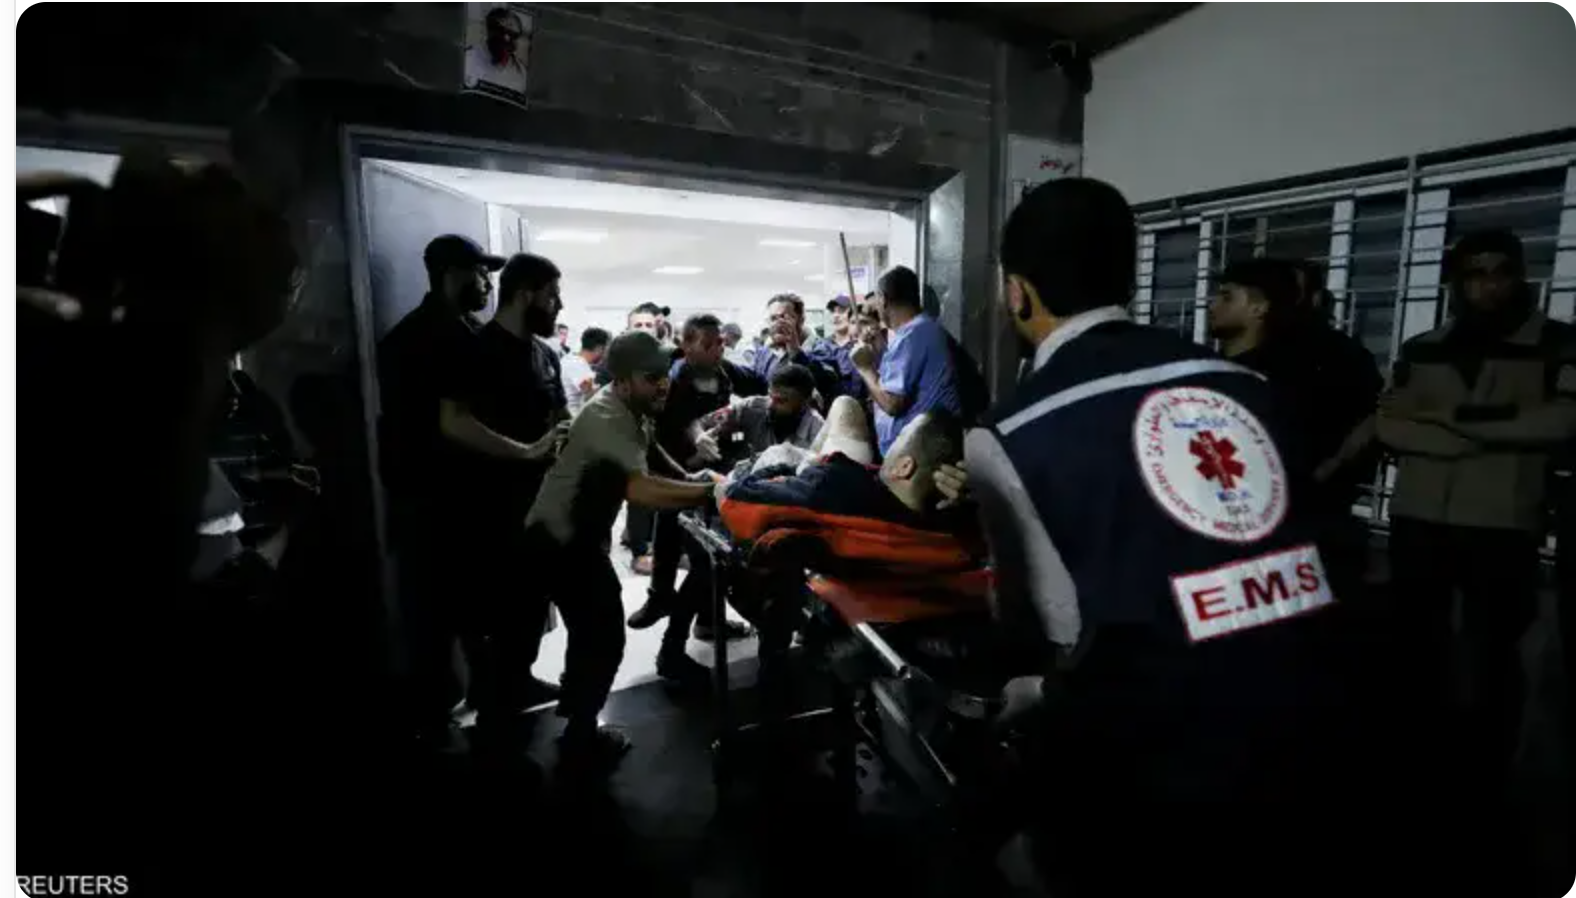 L’ordre des médecins mauritaniens condamne les crimes de l’occupant israélien à Gaza